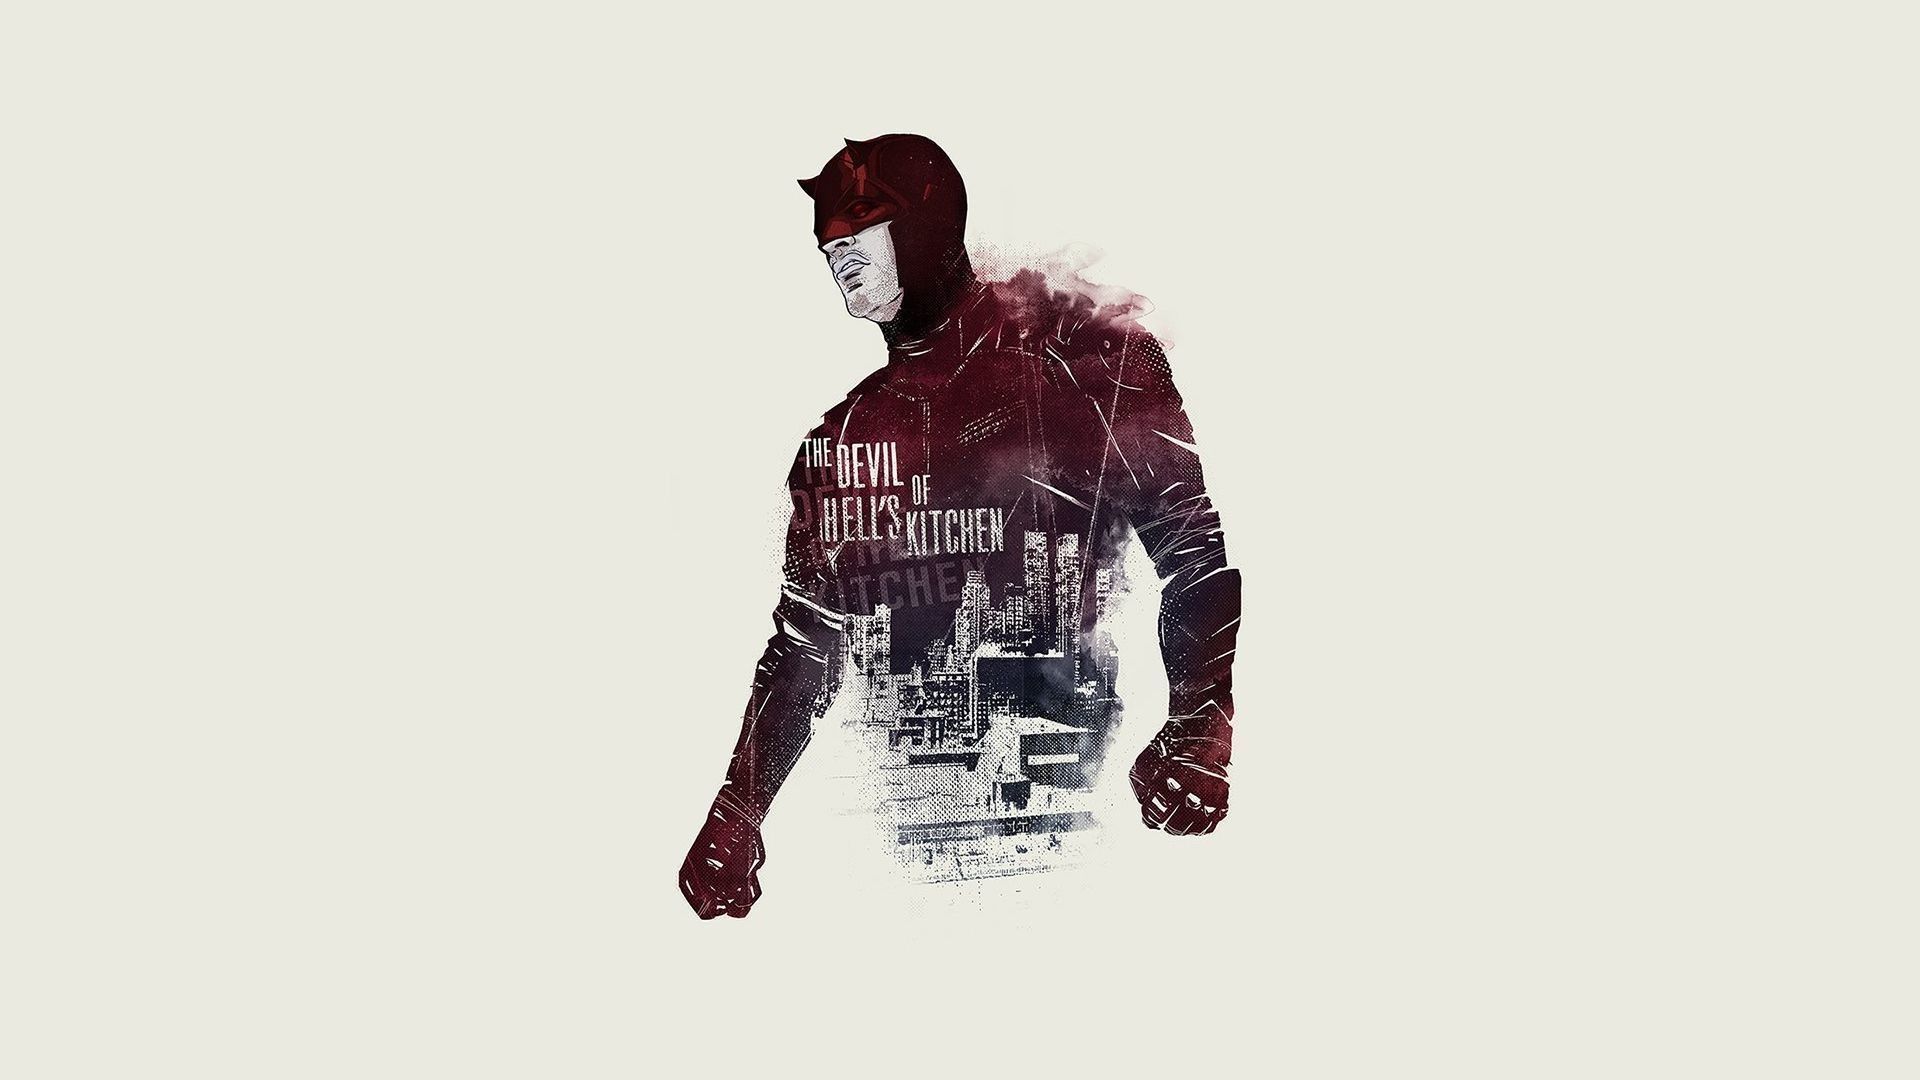 Daredevil Wallpaper background picture